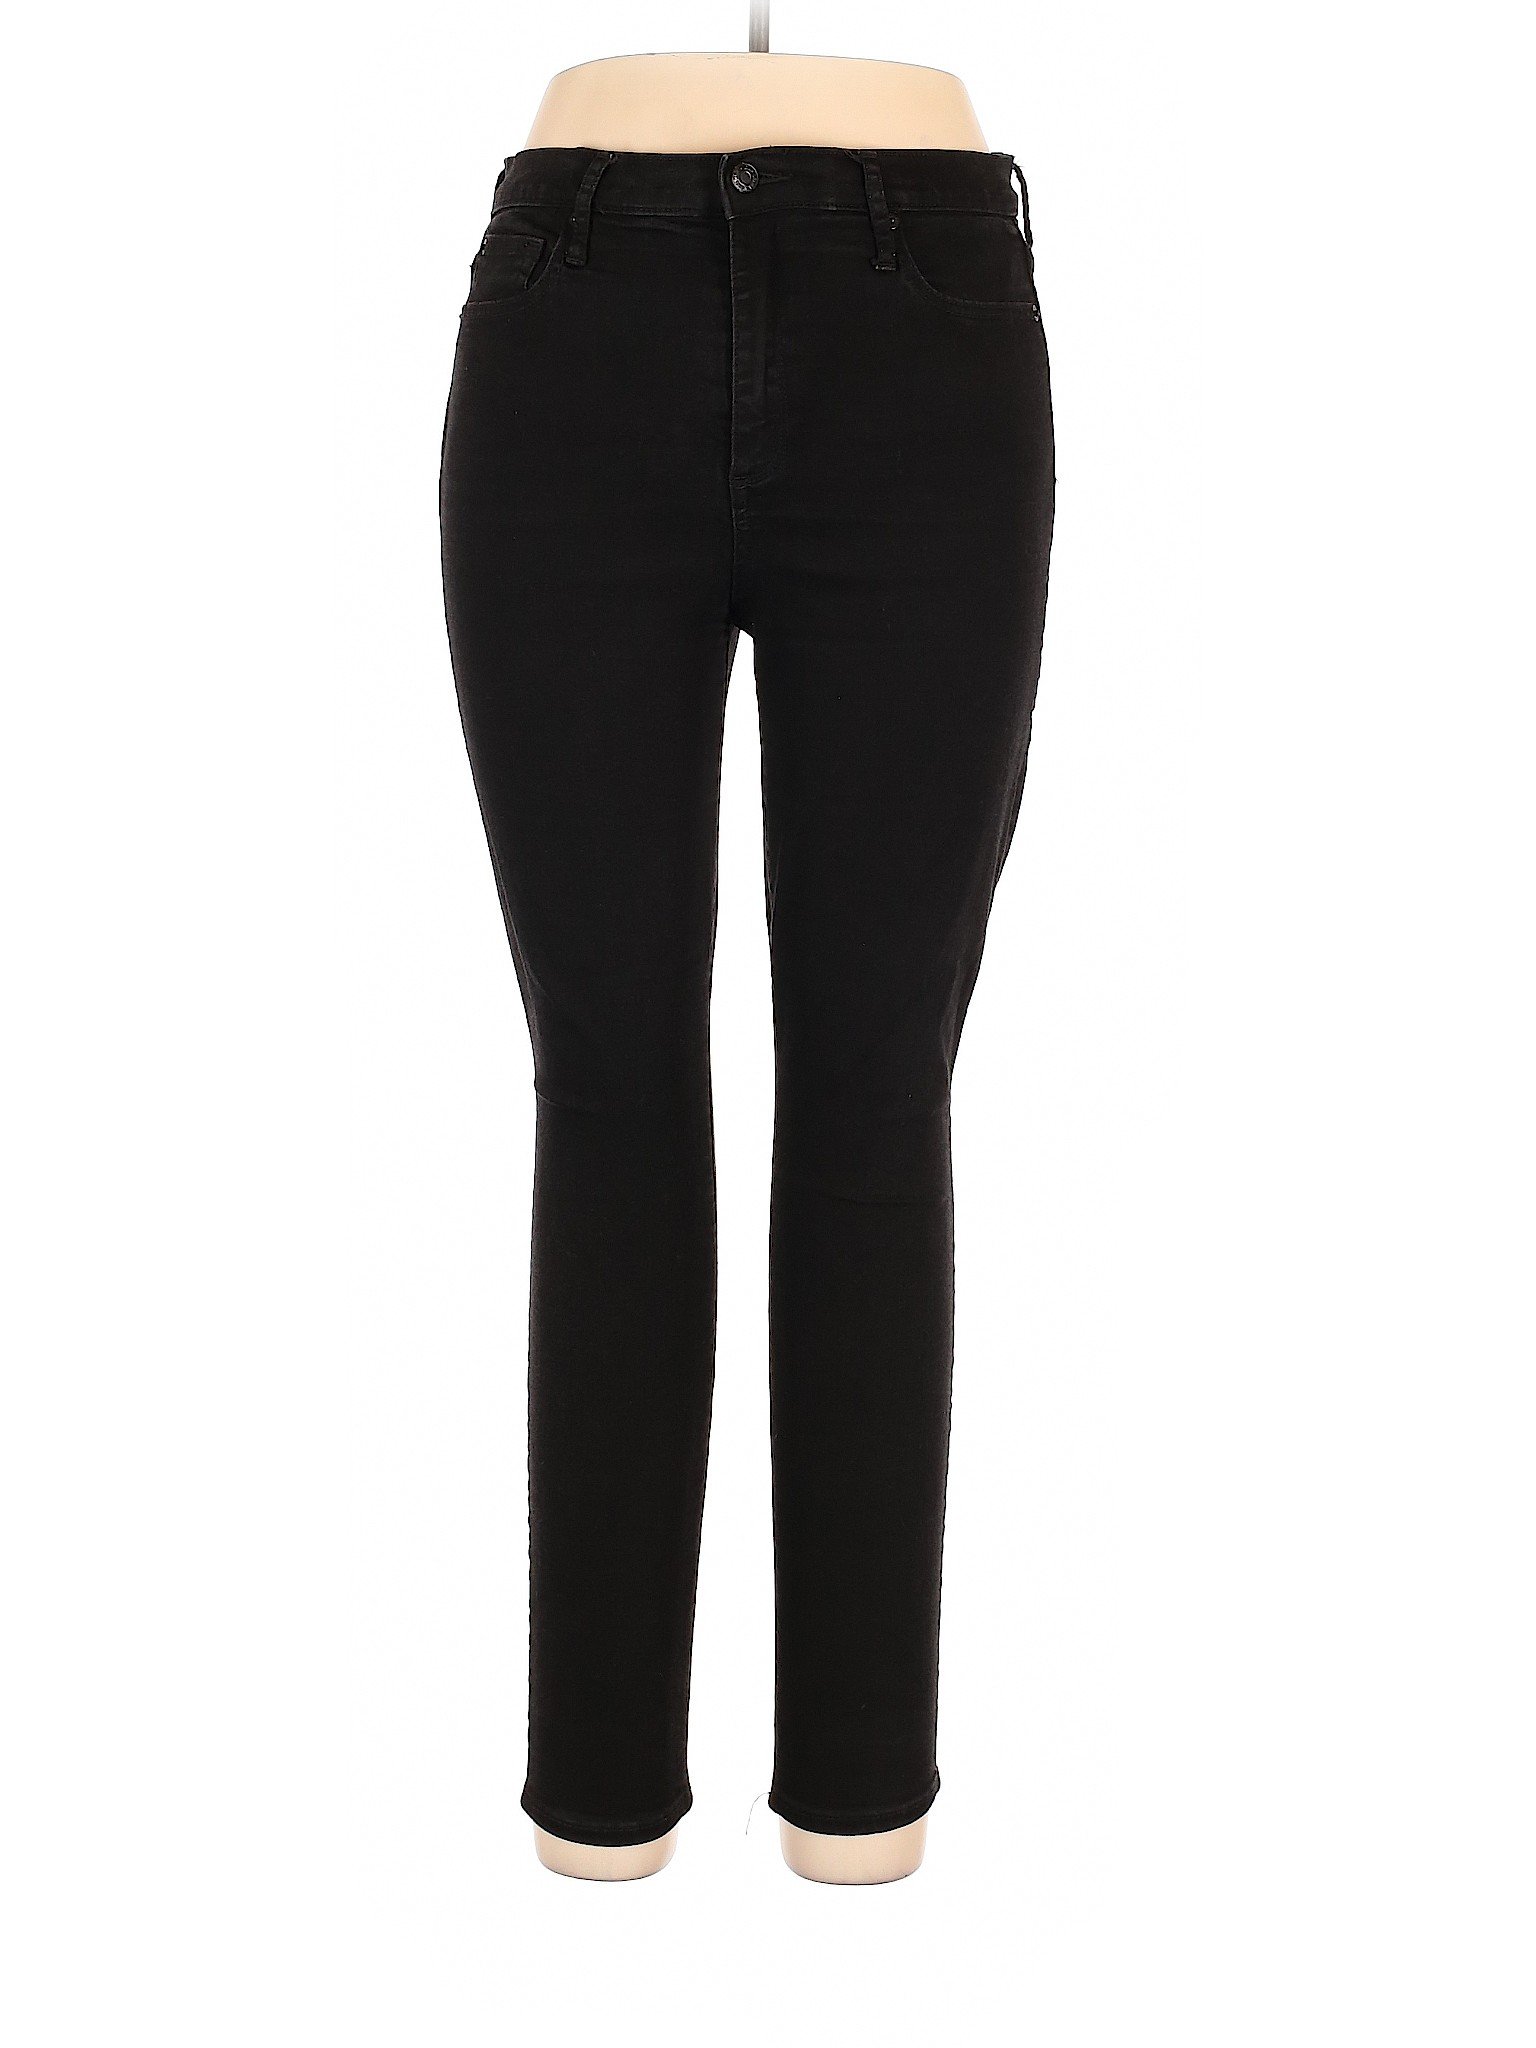 Gap Women Black Casual Pants 32W | eBay